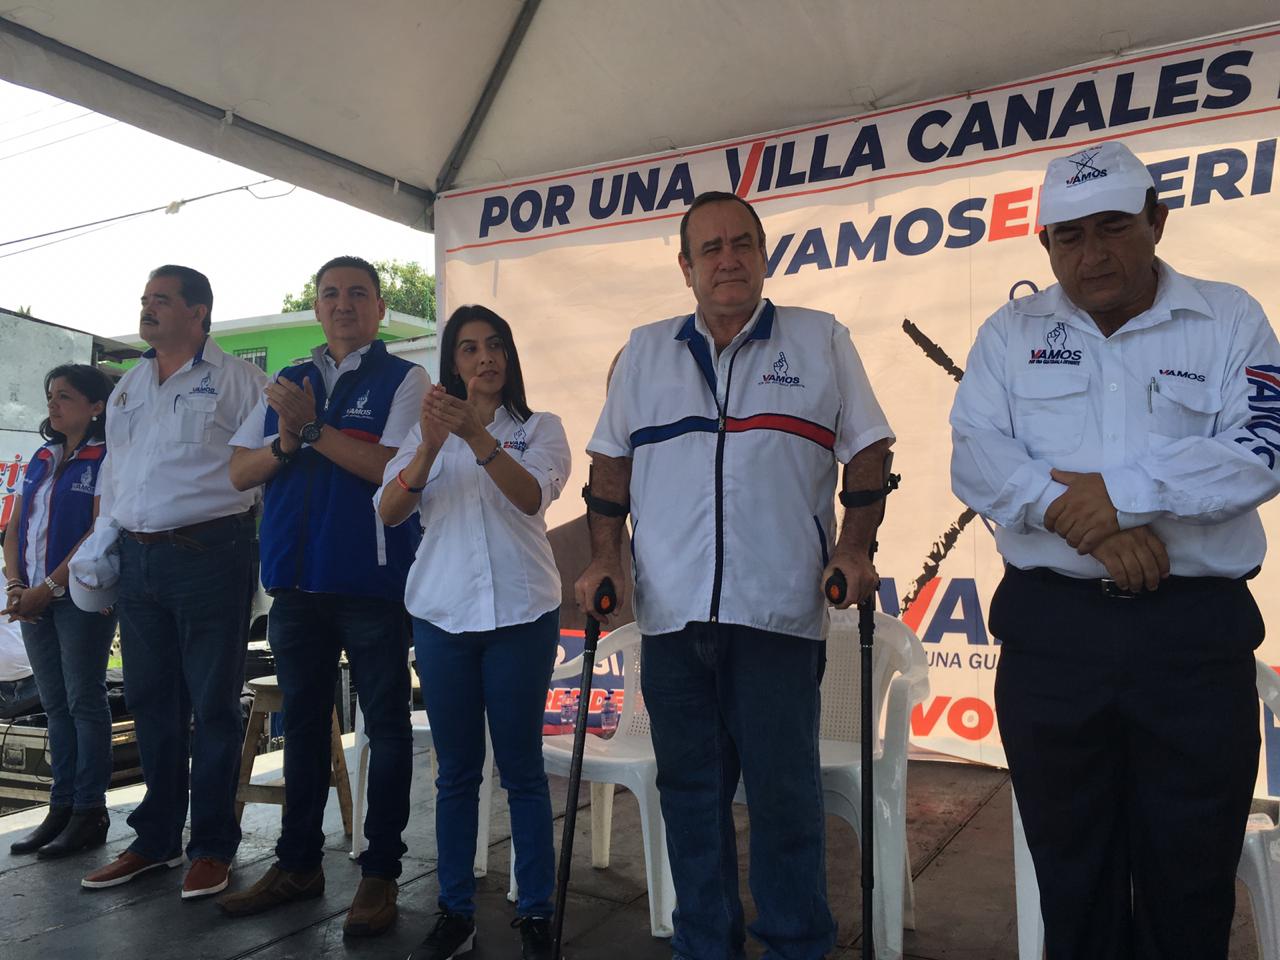 Alejandro Giammattei, candidato presidencial de Vamos, acudió a Villa Canales y fue acompañado por algunos candidatos locales. (Foto Prensa Libre: Alberto Cardona)